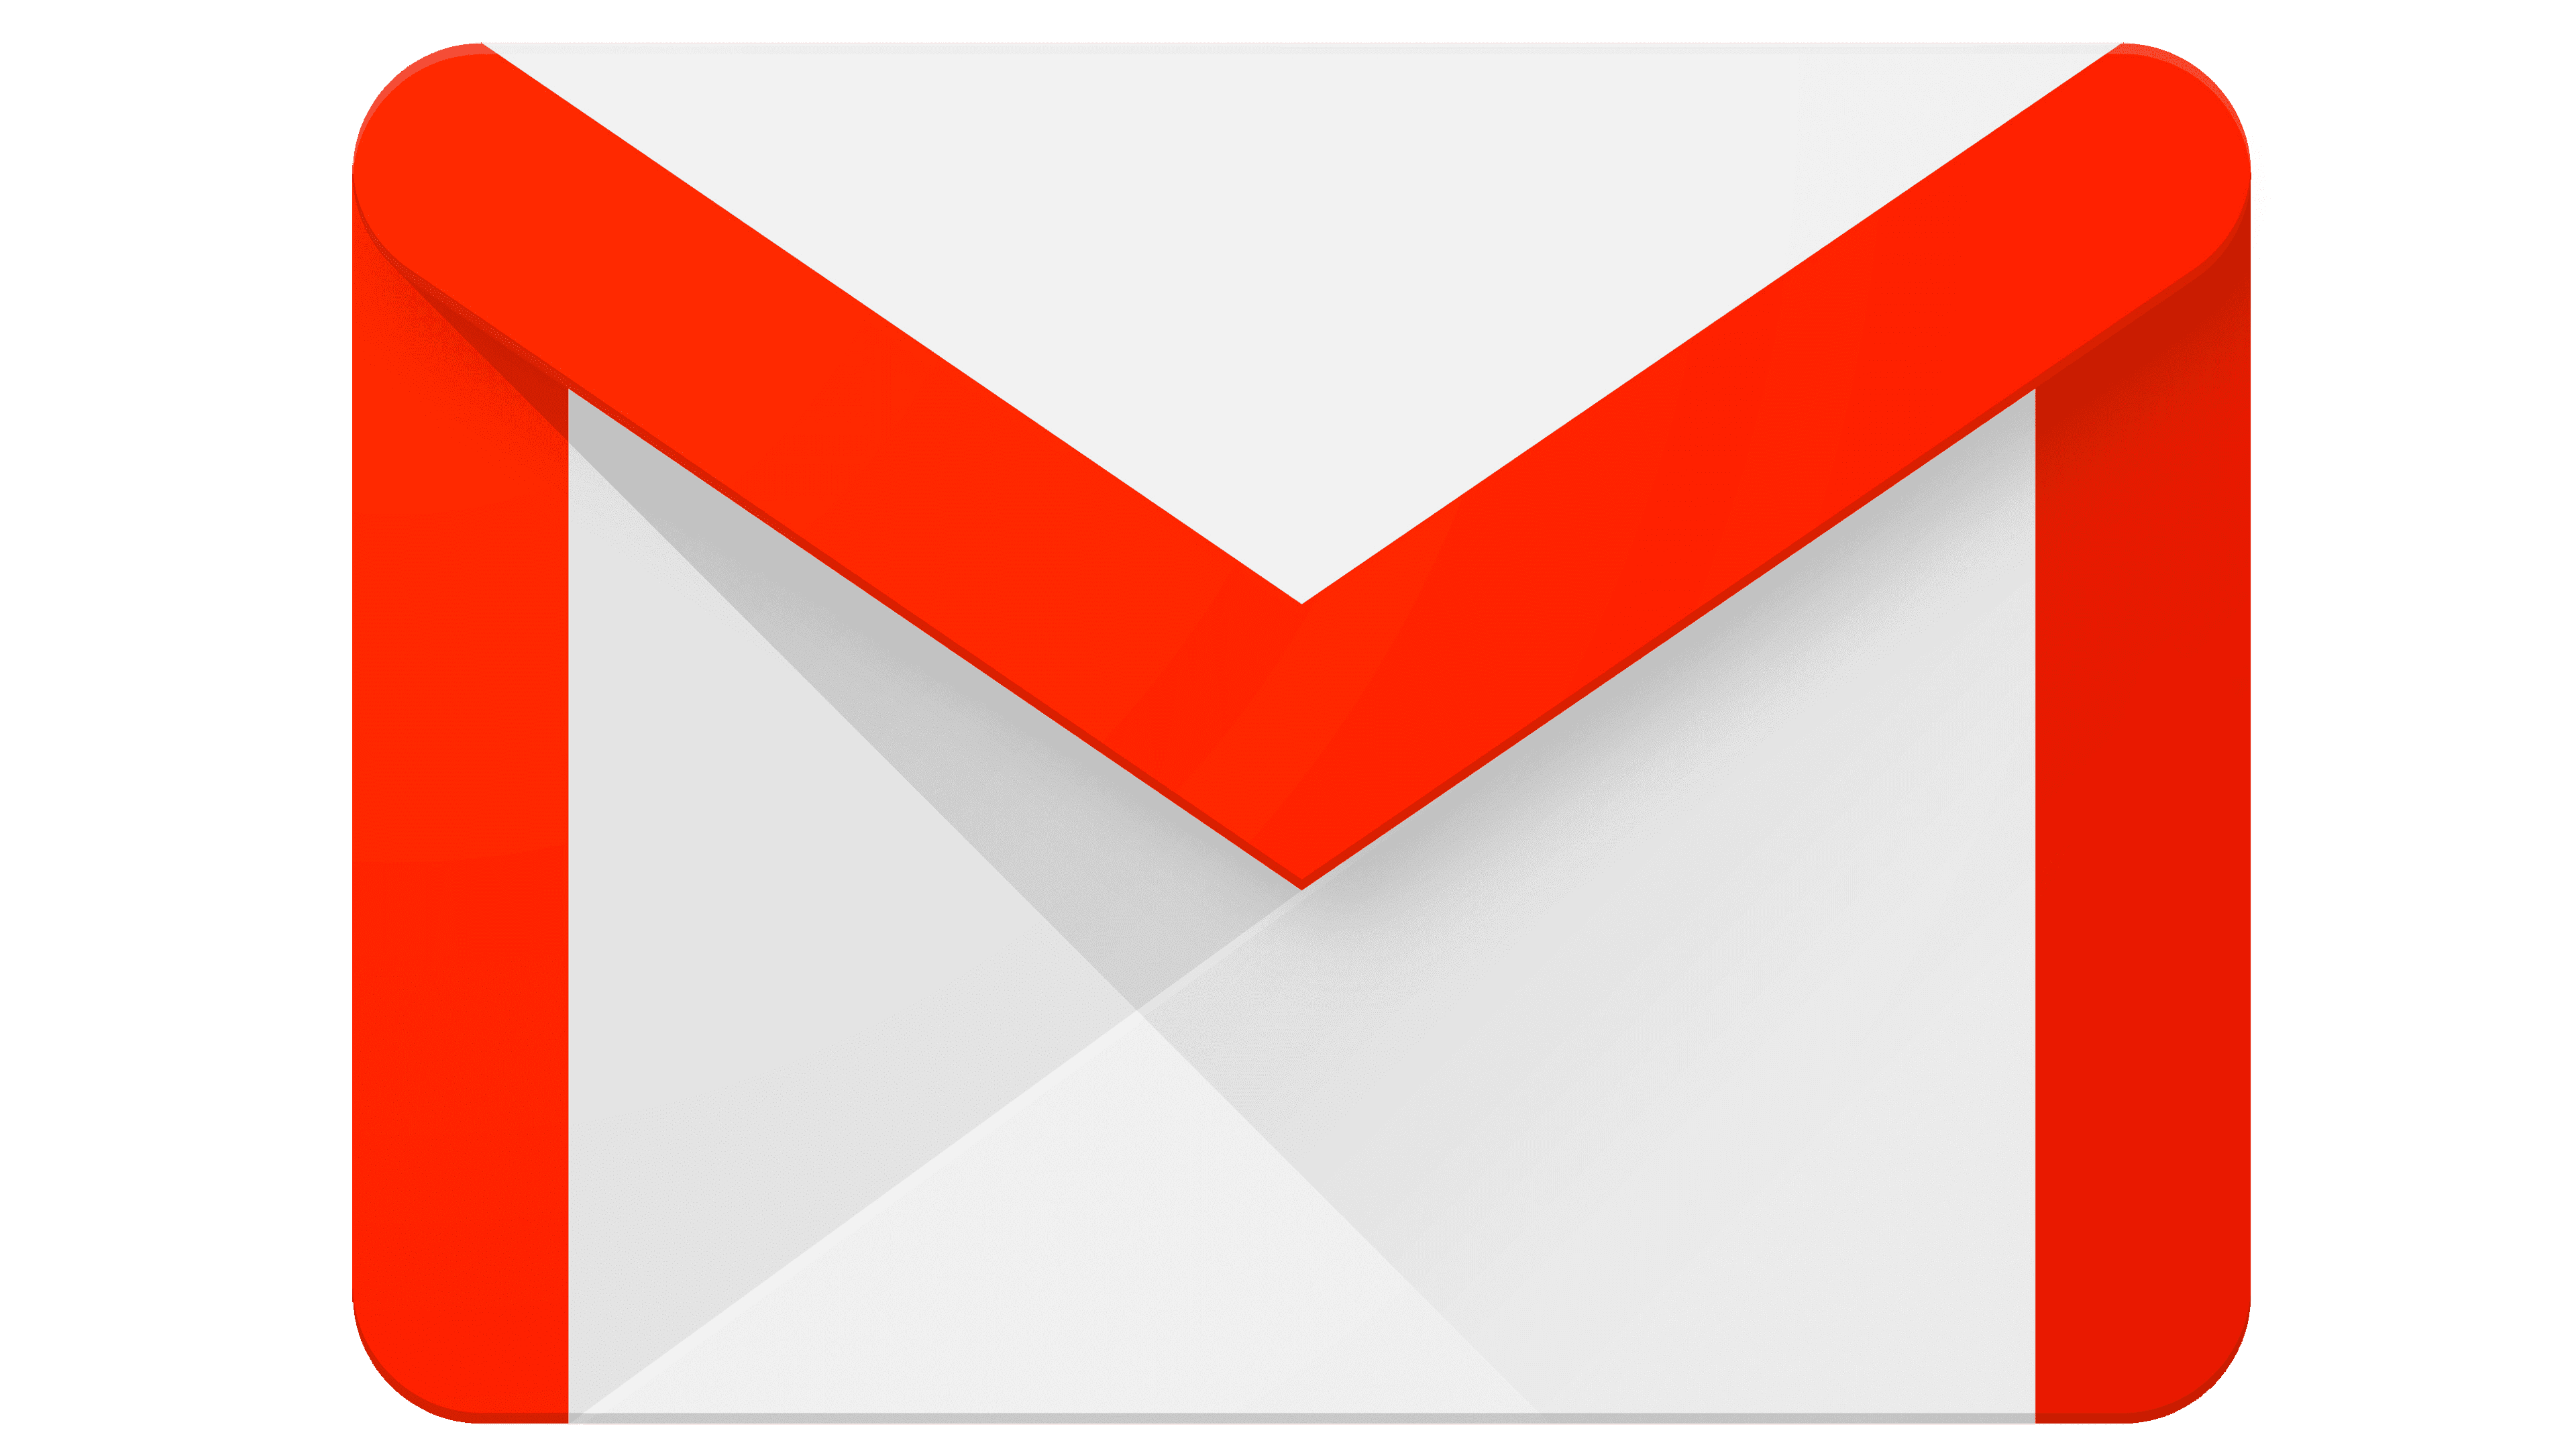 Premium PSD | Gmail logo 3d transparent psd file.